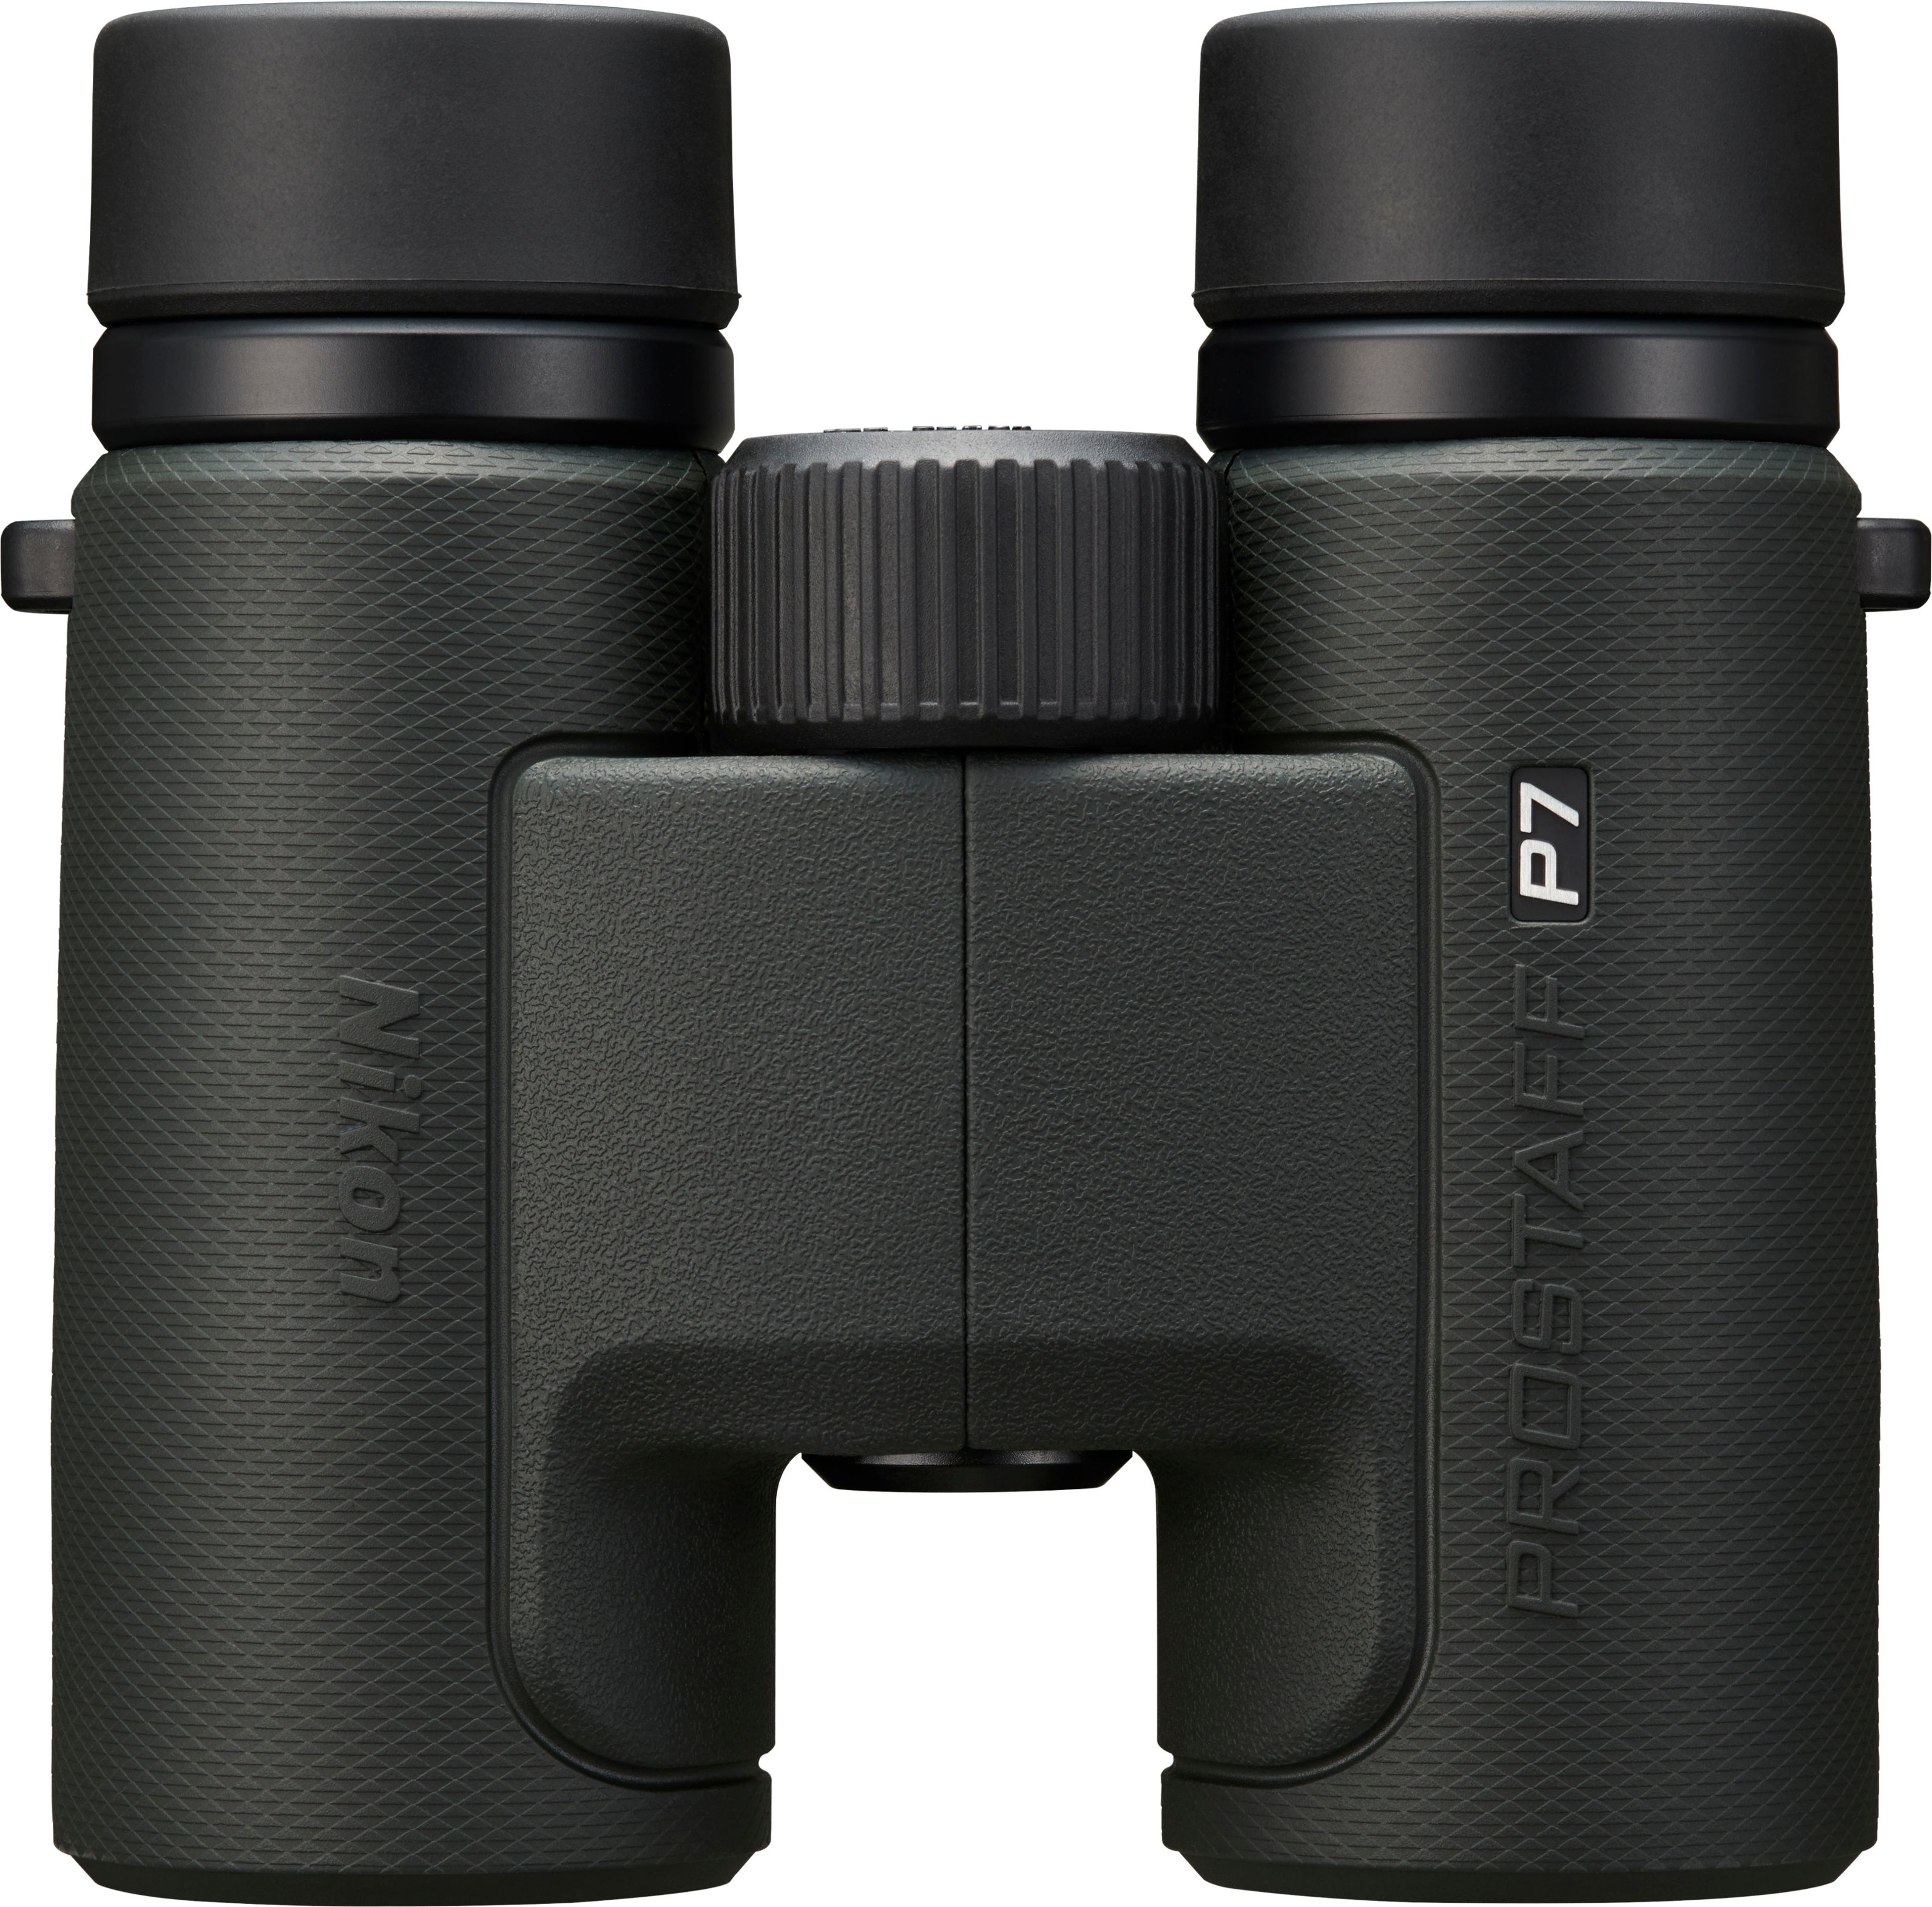 Angle View: Celestron - TrailSeeker 10 x 32 Waterproof Binoculars - Gray